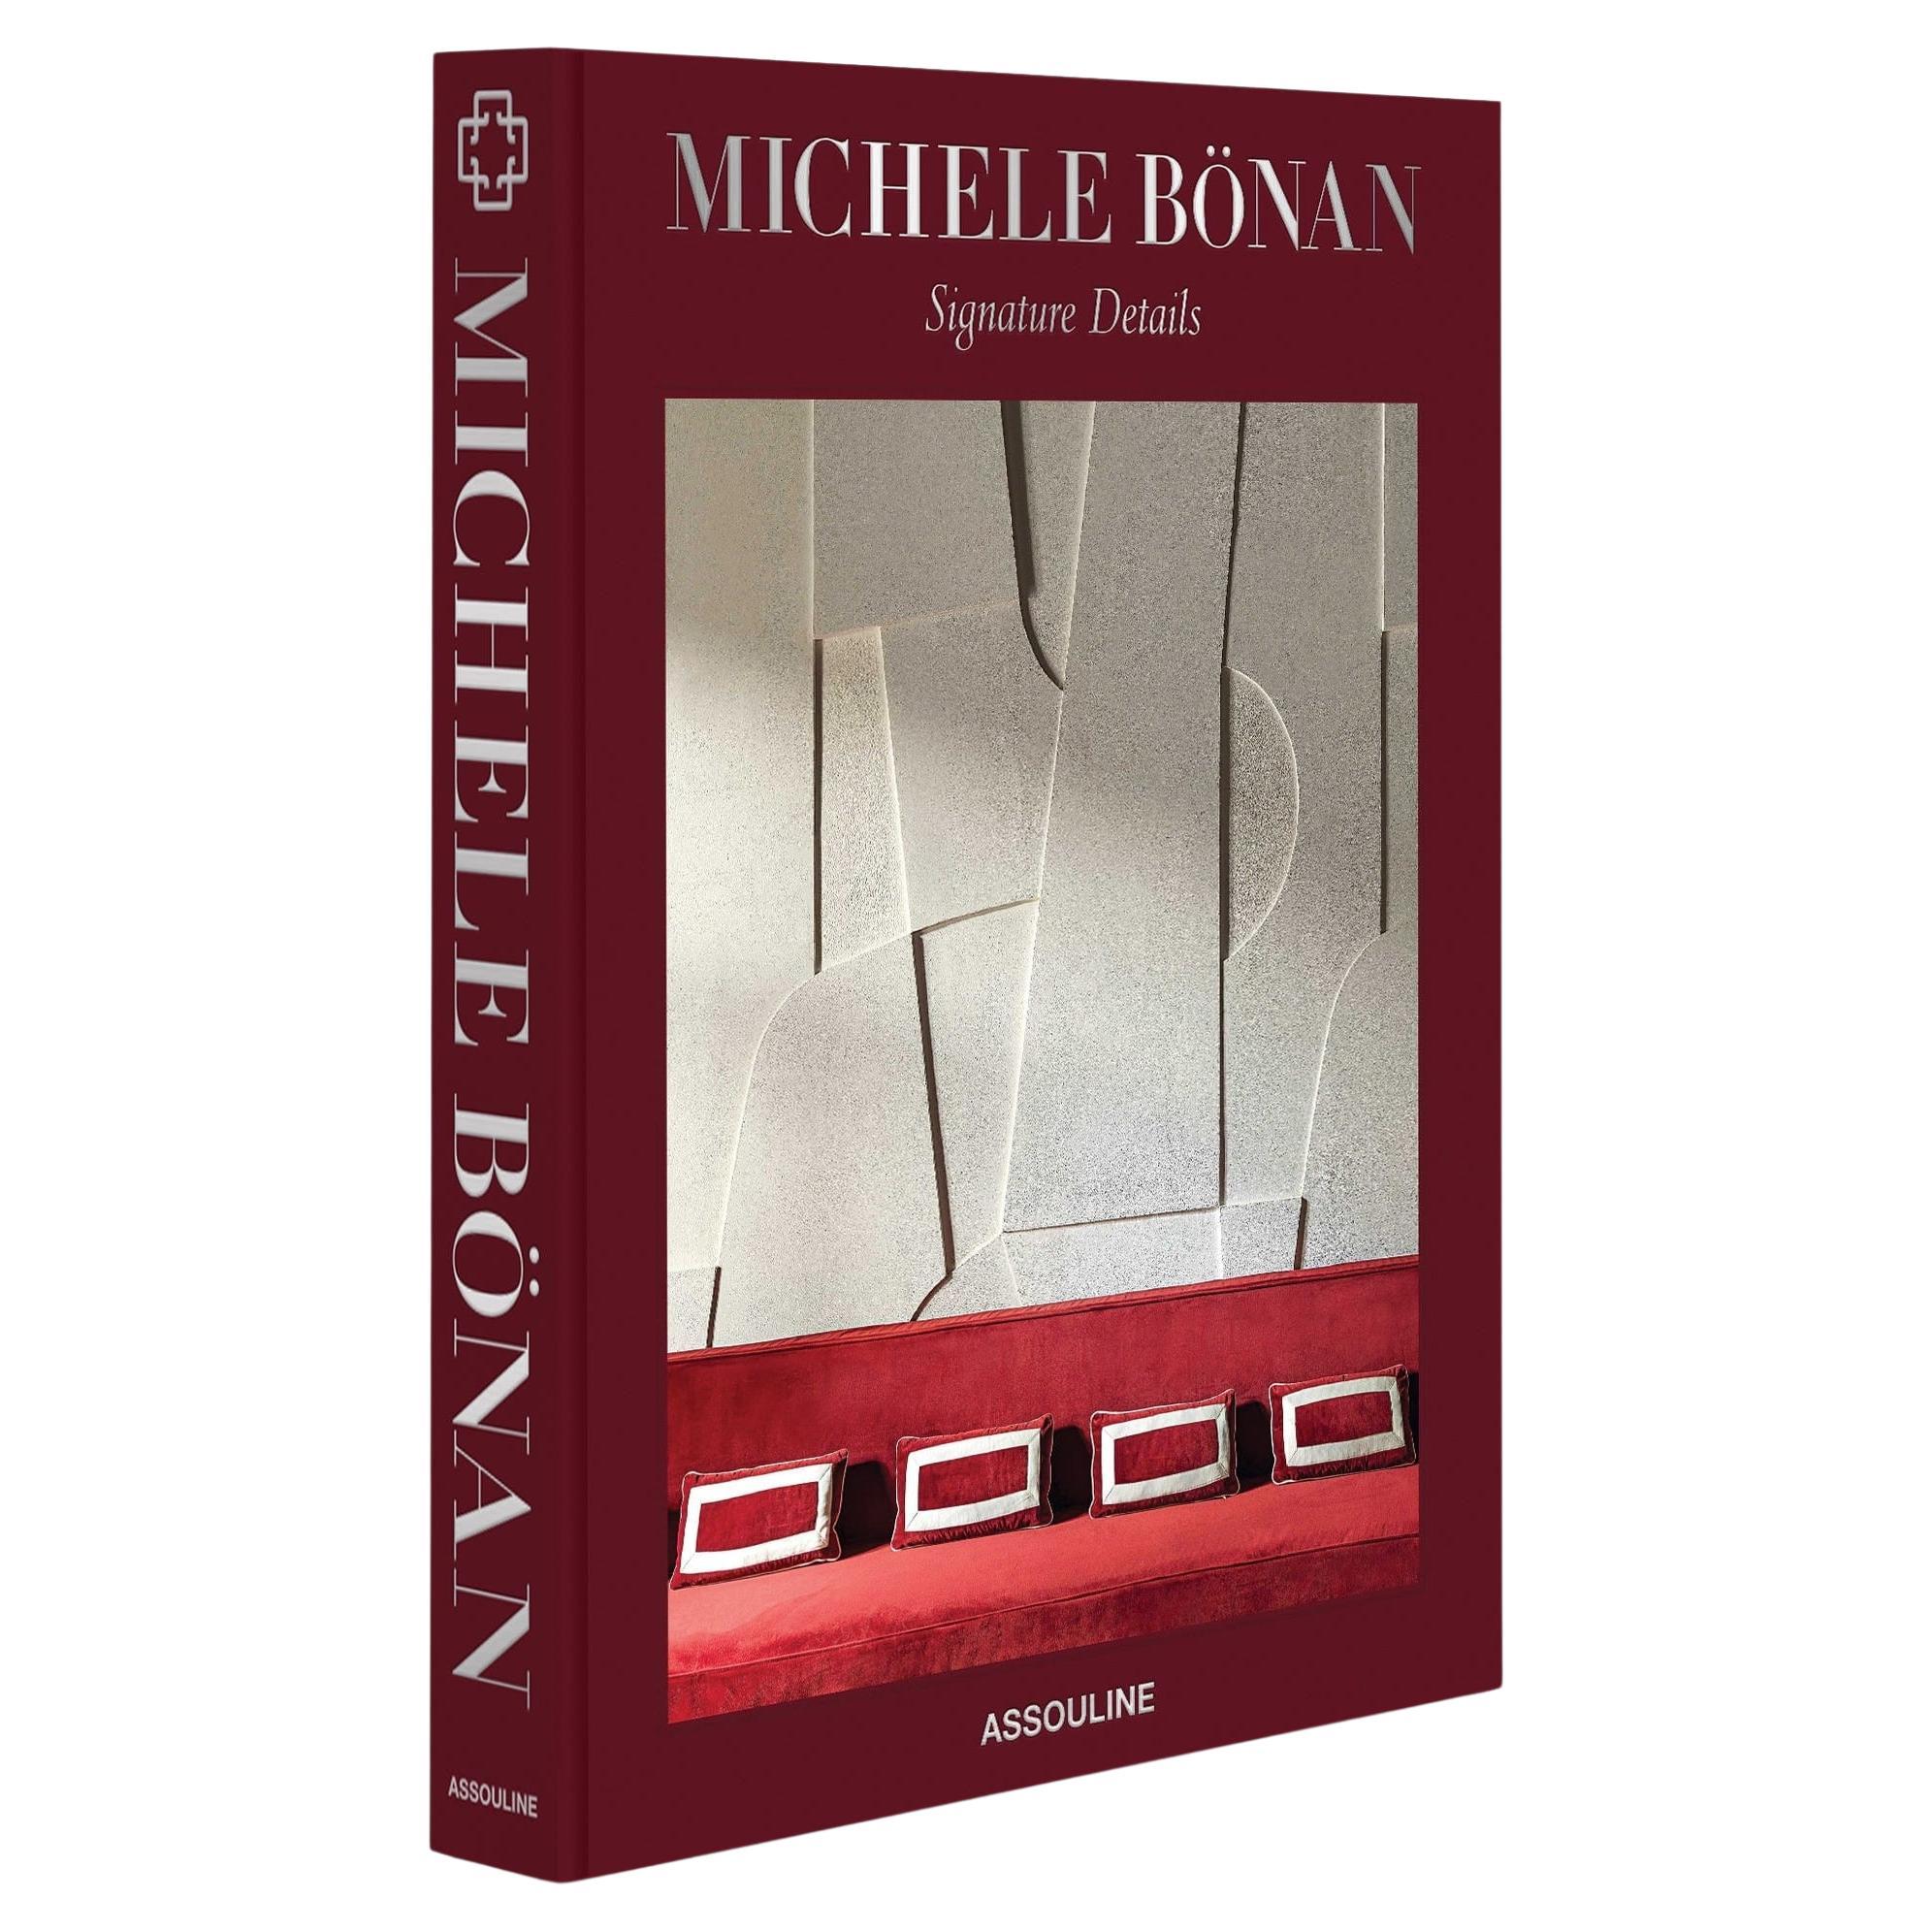 Michele Bönan: Signature Details For Sale